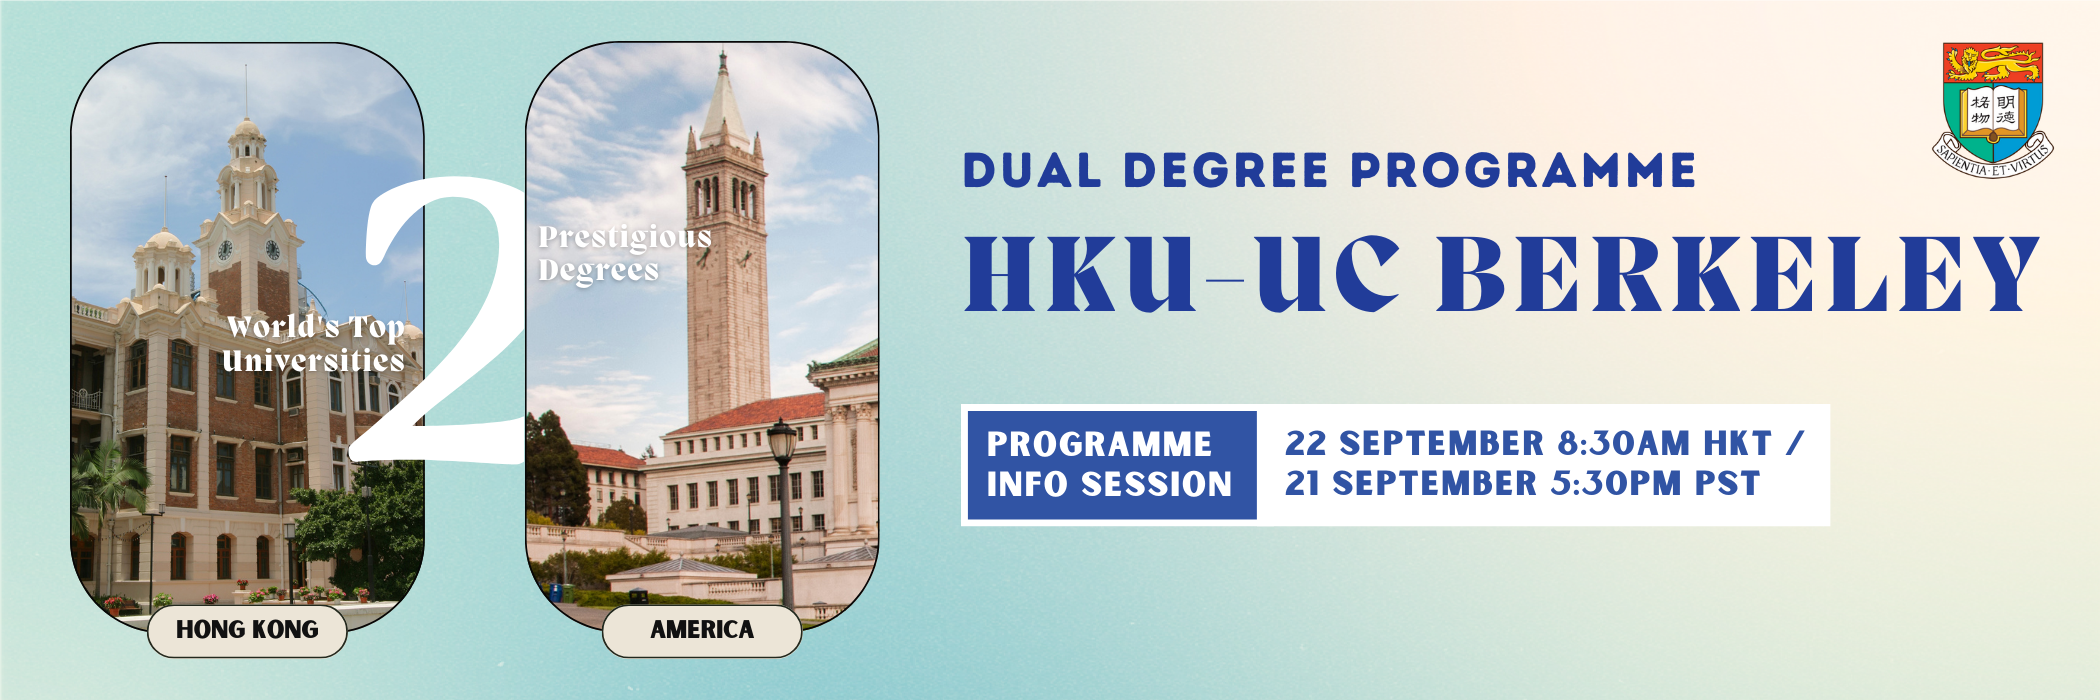 Banner for HKU-UC Berkeley Information session